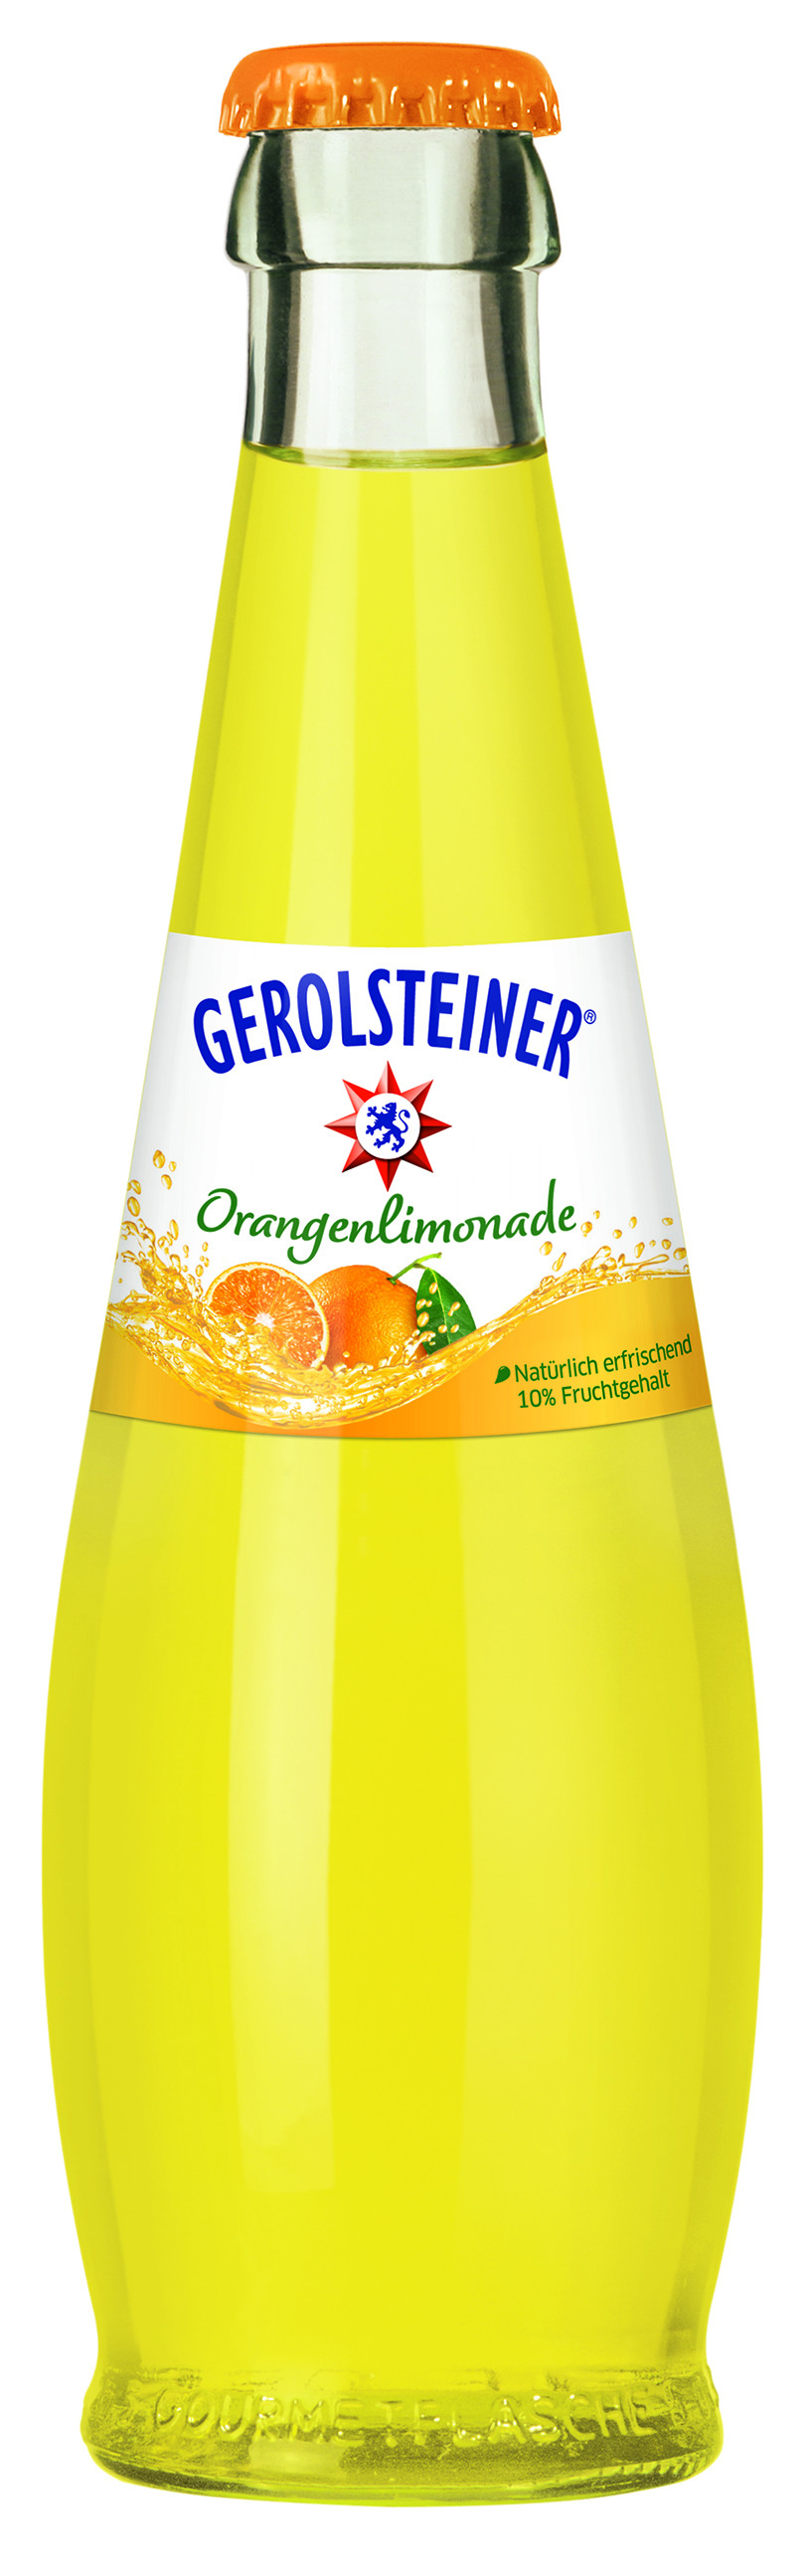 Gerolsteiner Gero limonade orange 25cl